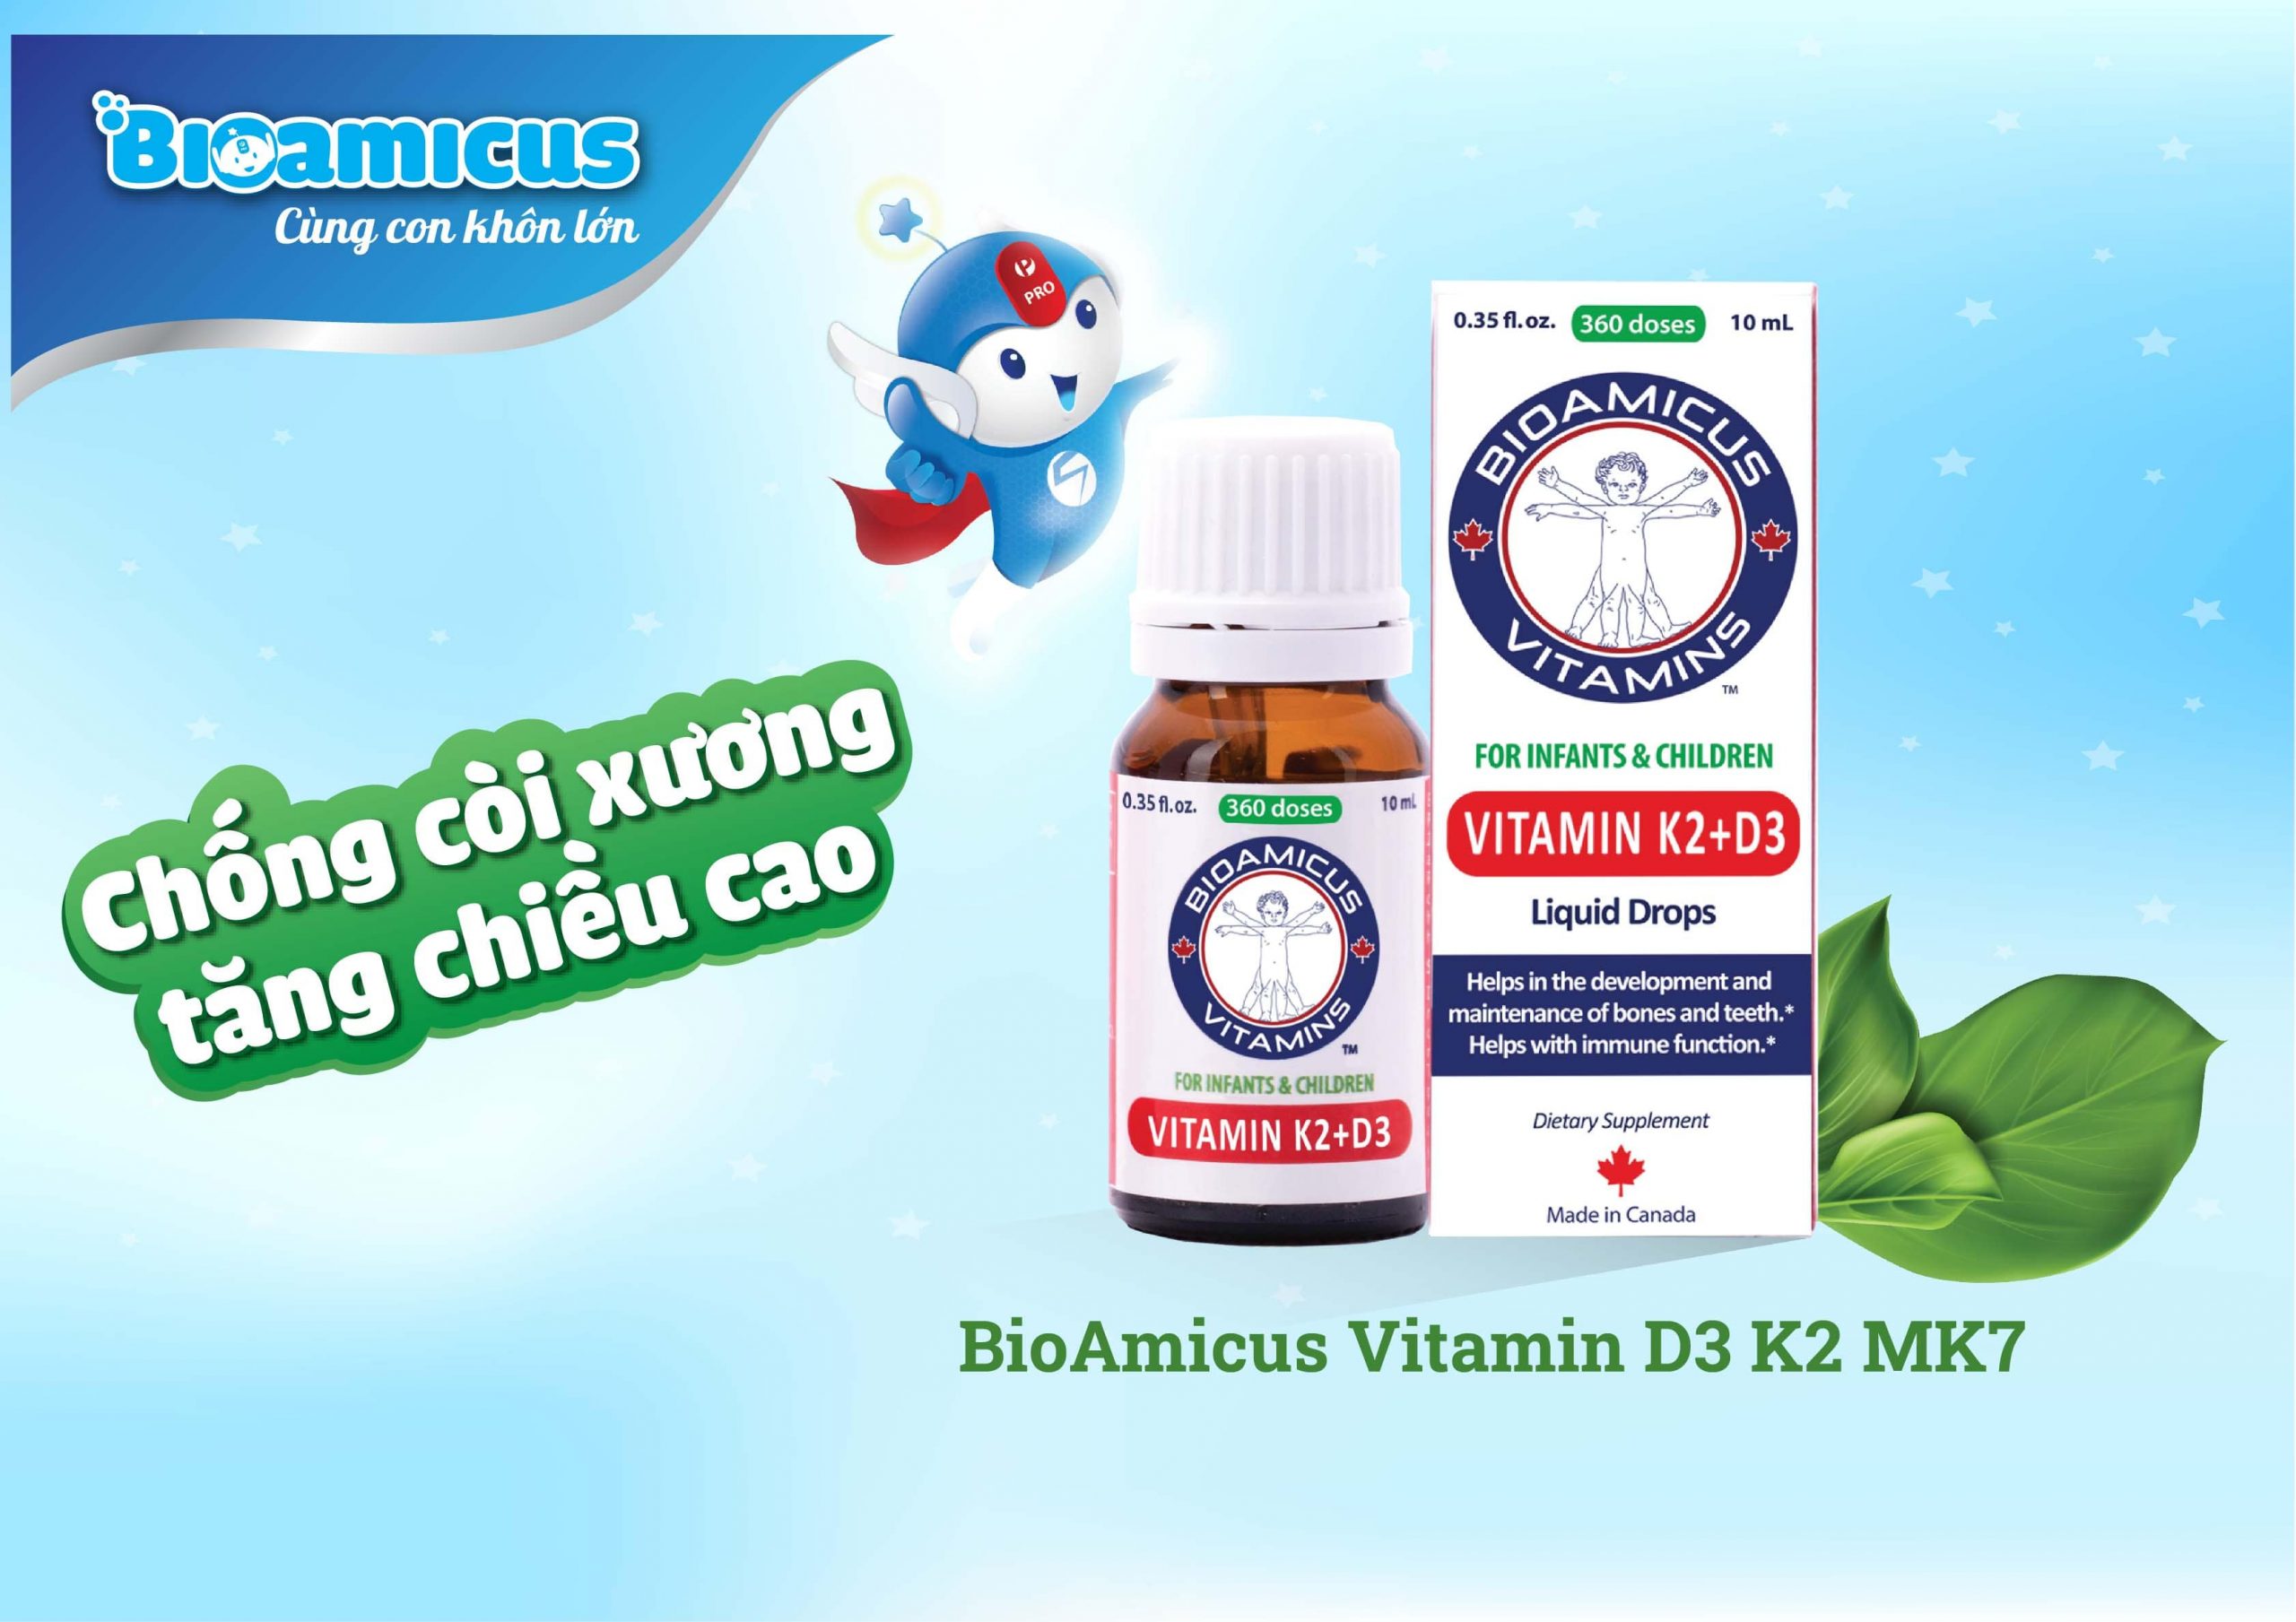 BioAmicus Vitamin D3 K2 MK7